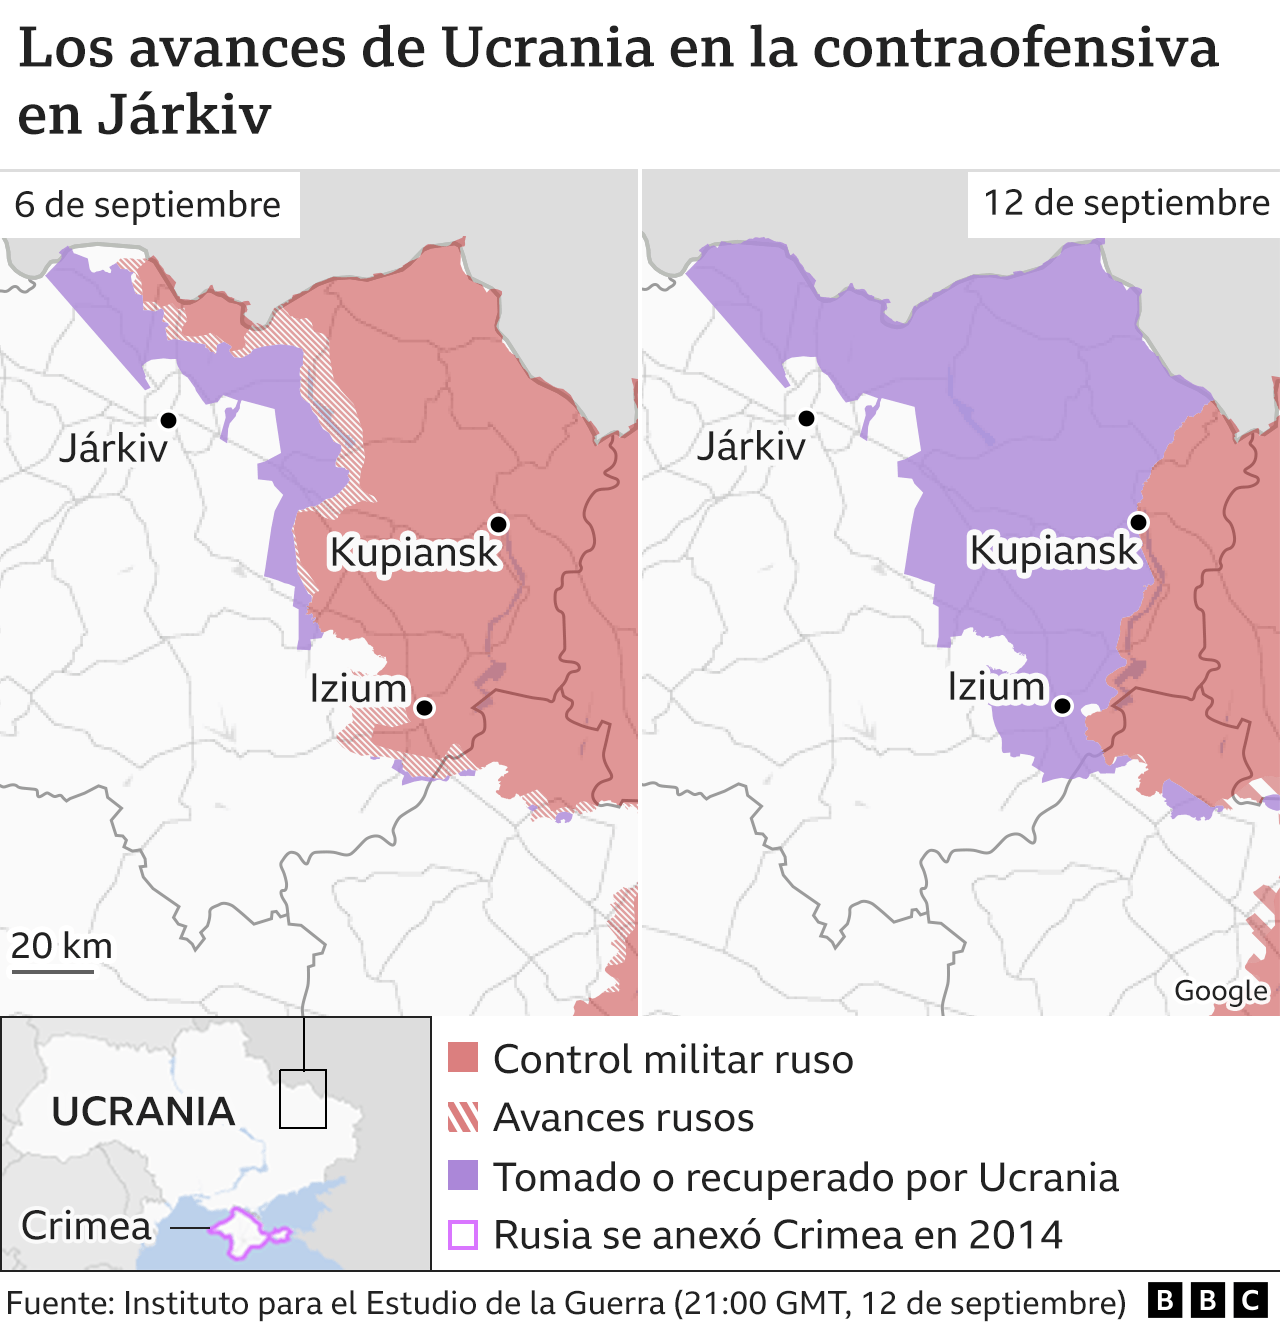 Los avances de Ucrania en la contraofensiva en Járkiv.